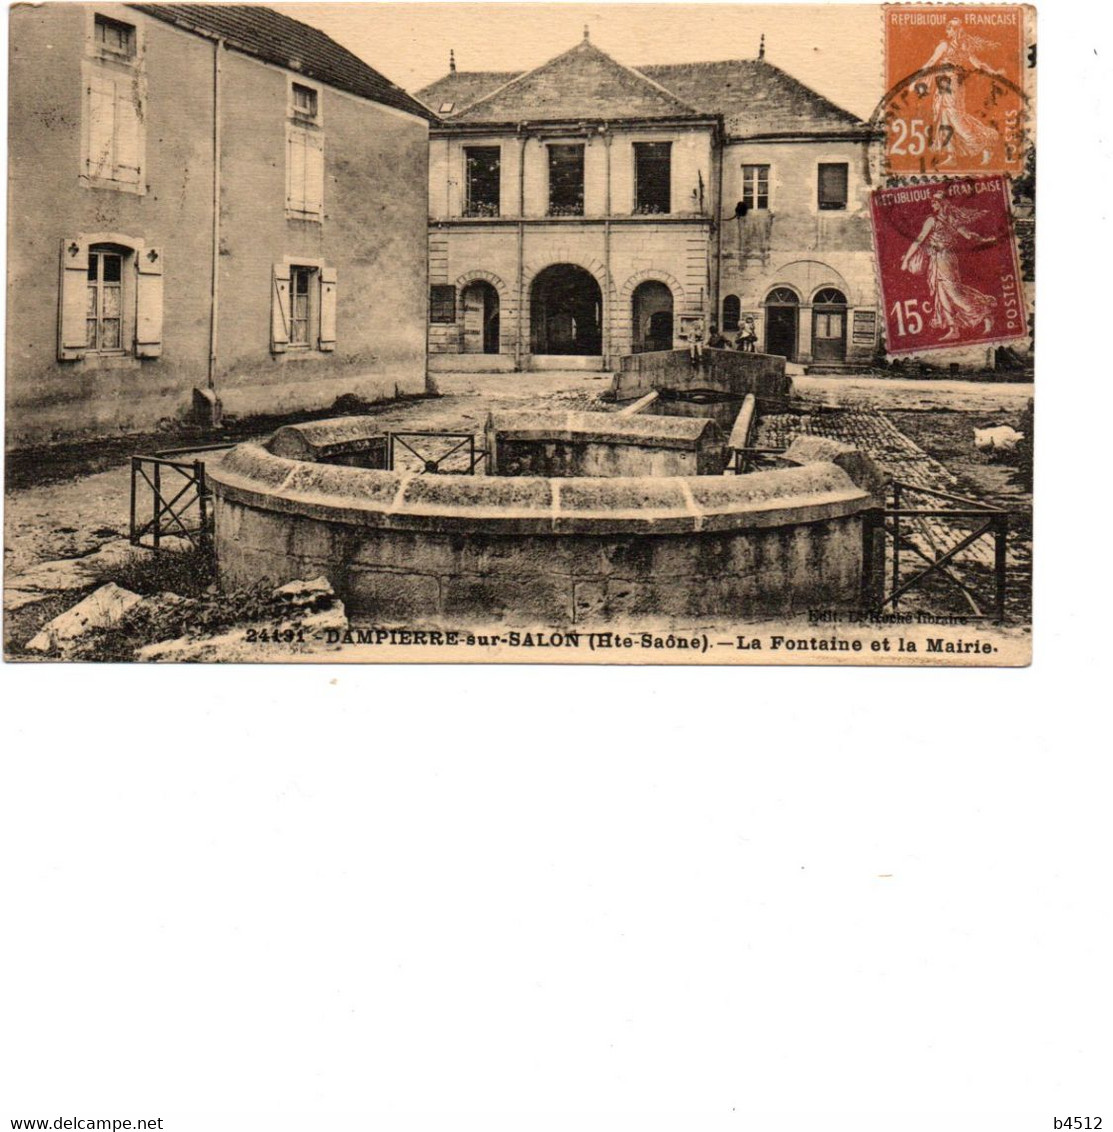 70 DOMPIERRE Sur SALON La Fontaine Et La Mairie 1930 - Dampierre-sur-Salon